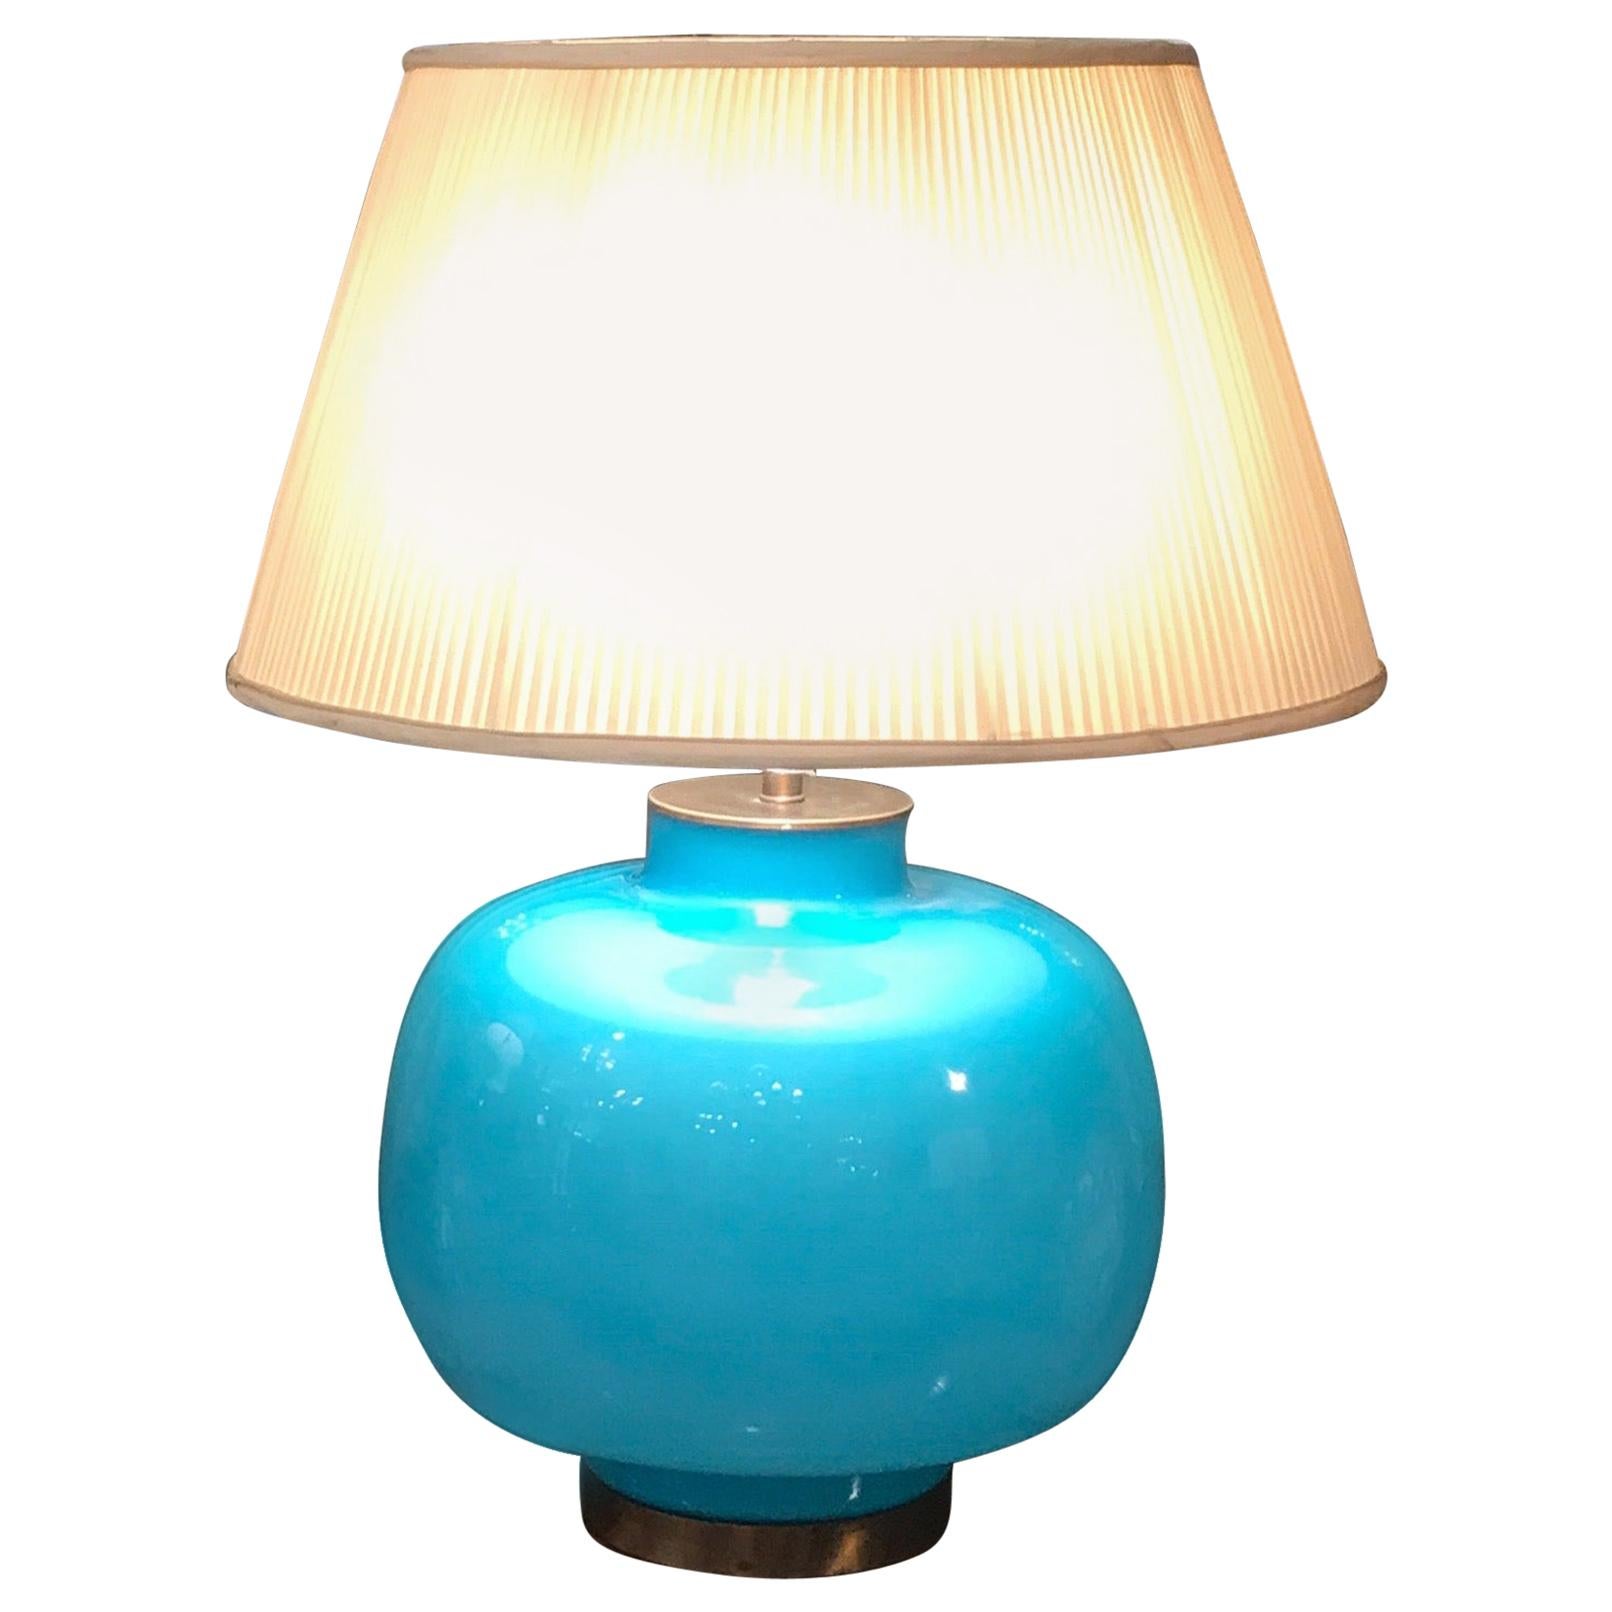 Italian Celeste Blue Murano Glass Lamp